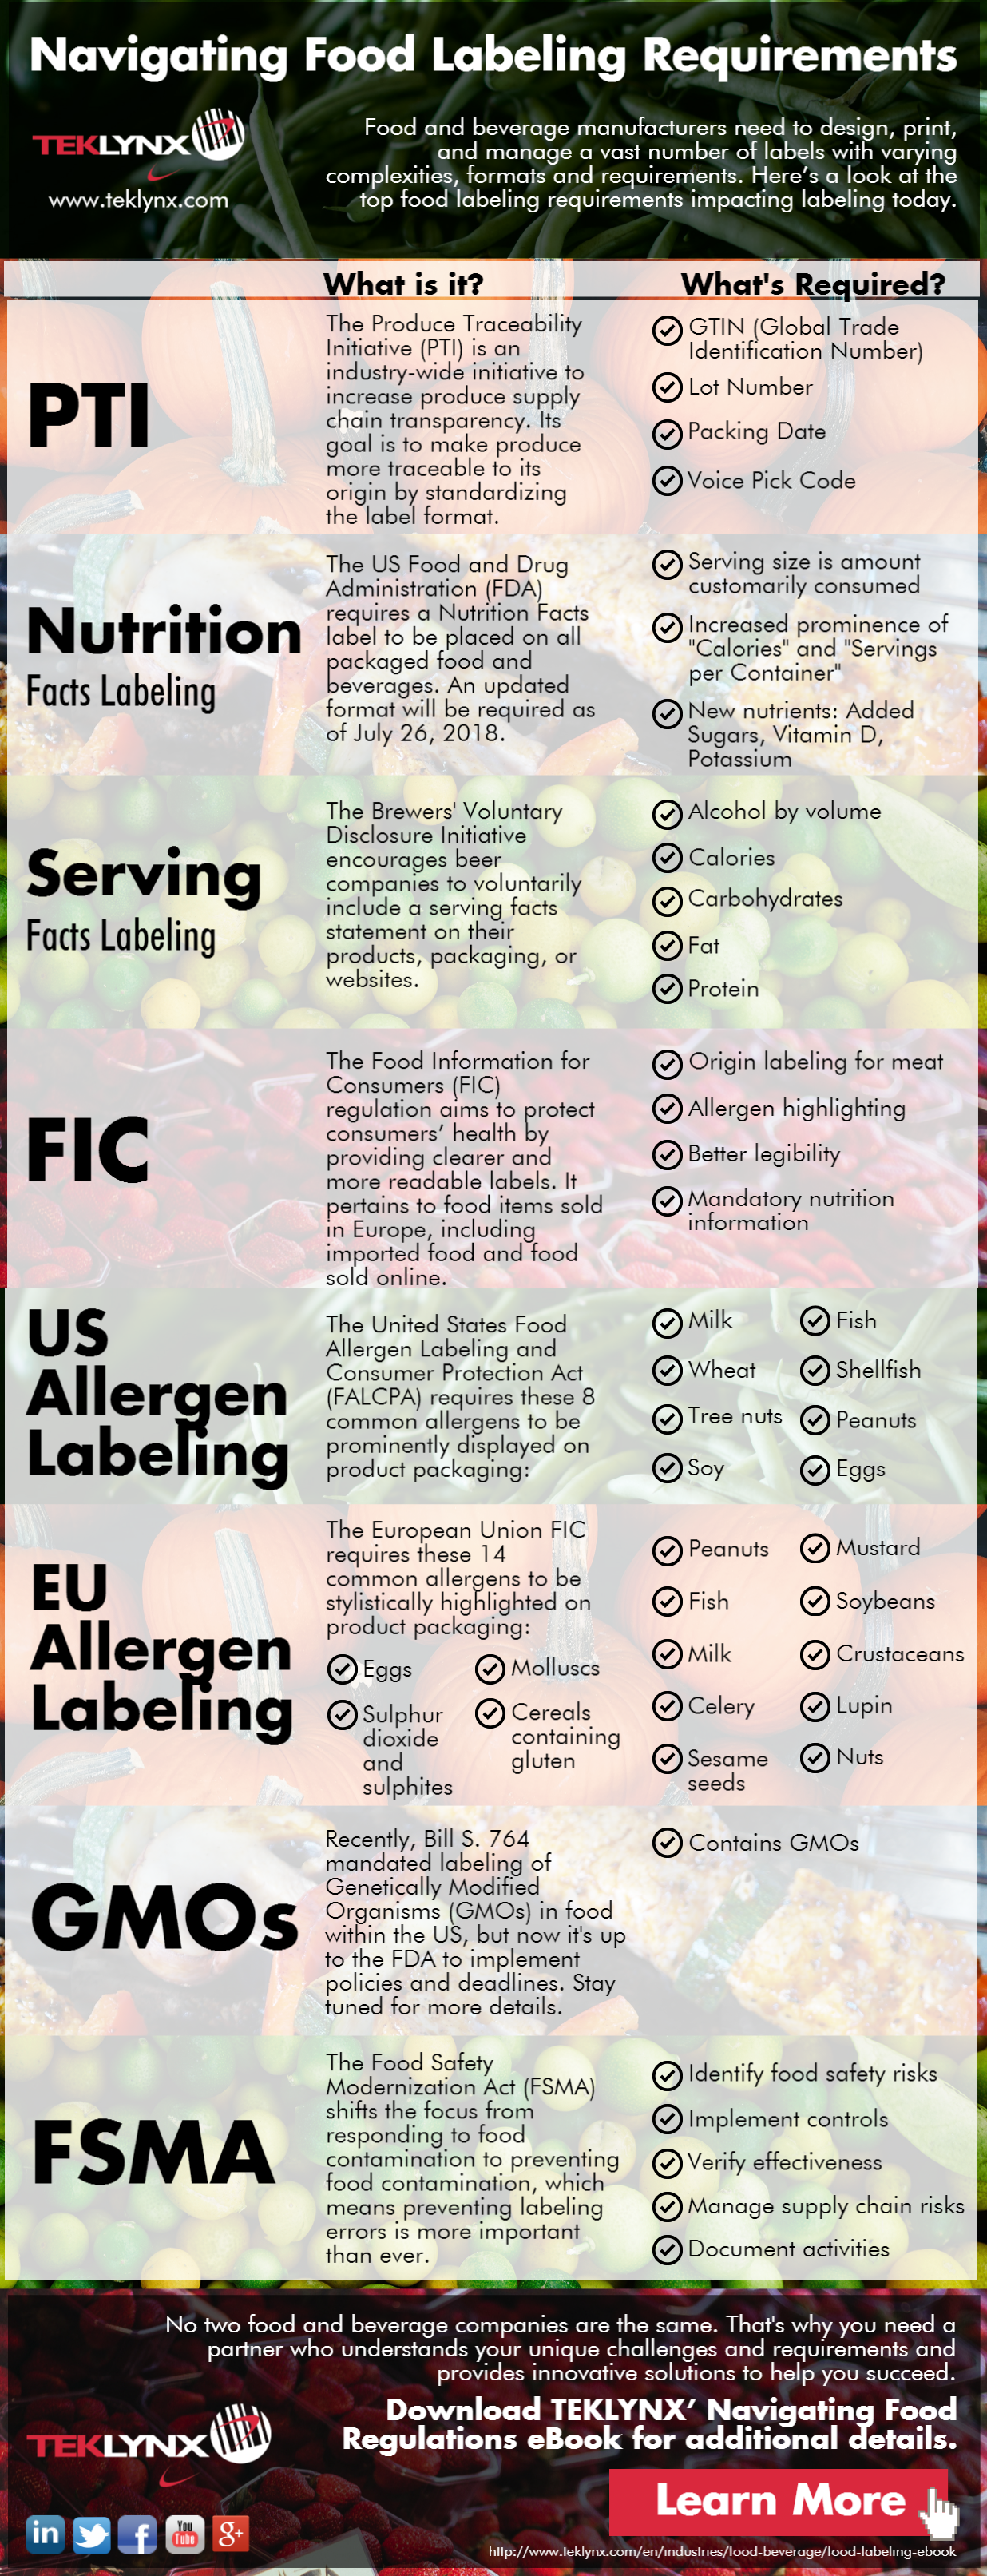 Infografica: Districarsi nei requisiti di etichettatura dei prodotti alimentari